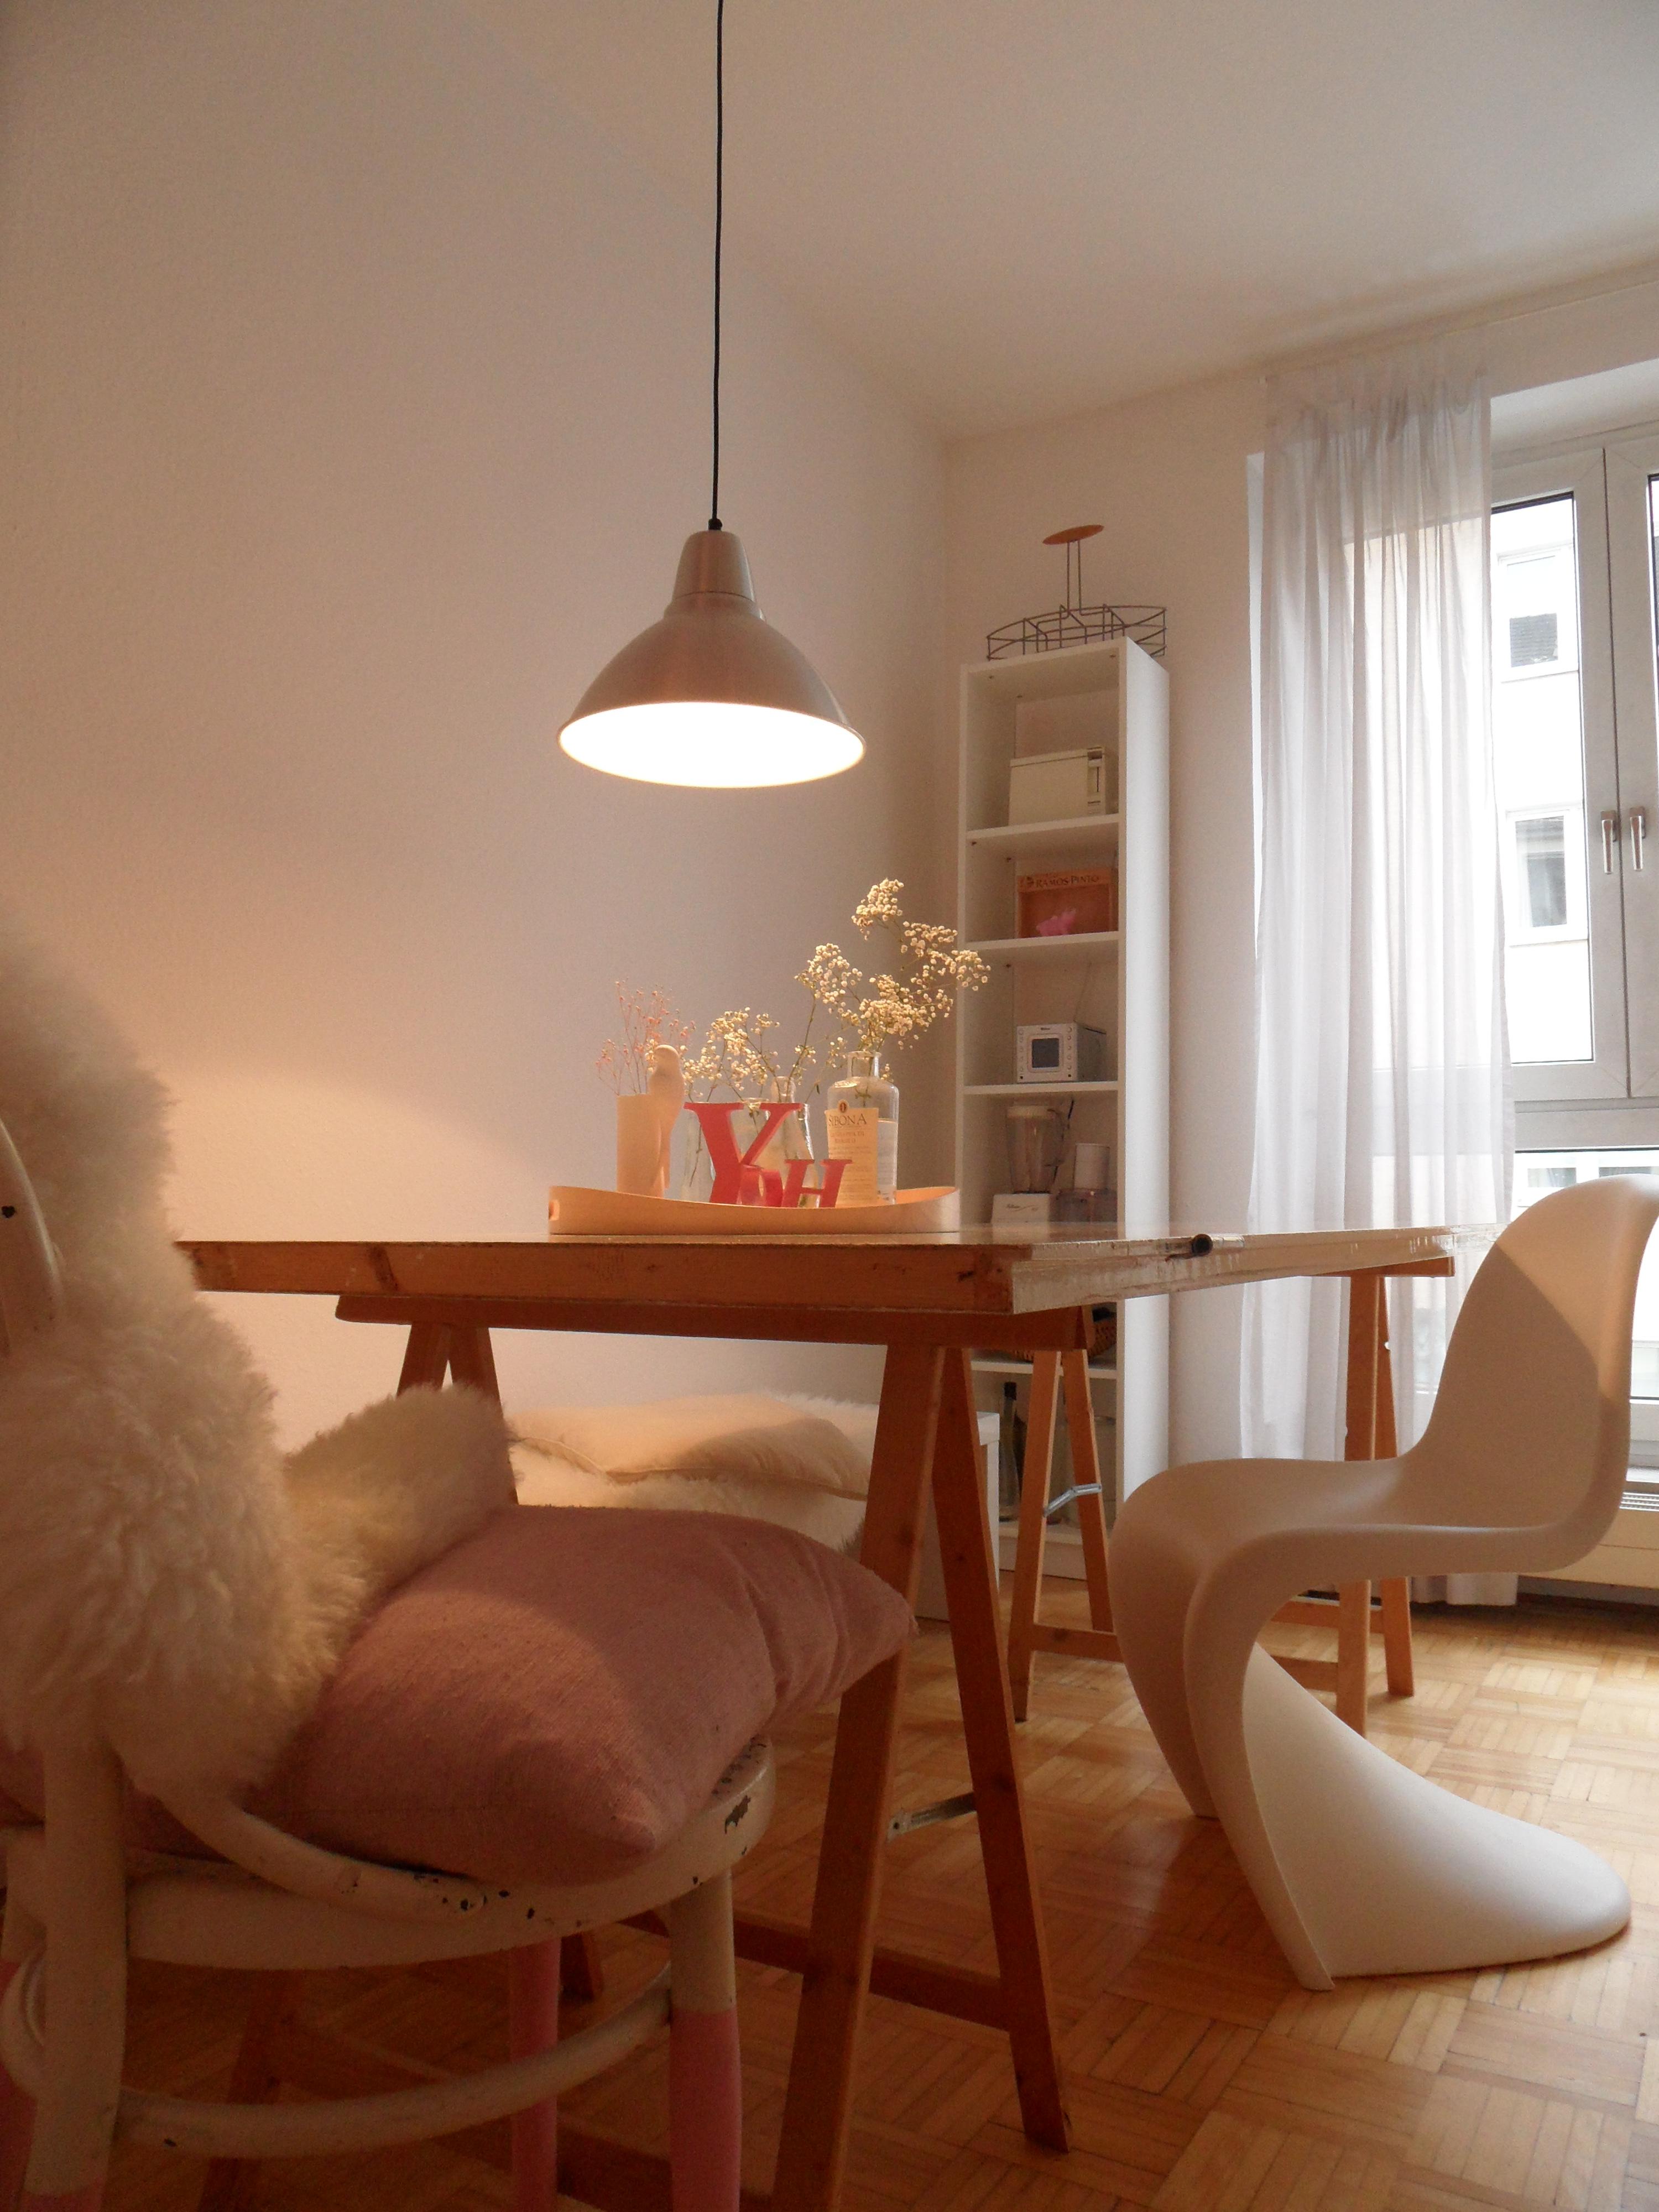 Panton Chair "in gemütlicher Küchenrunde" #pendelleuchte #hängeleuchte #tisch ©Yvonne Heinemann Interiors